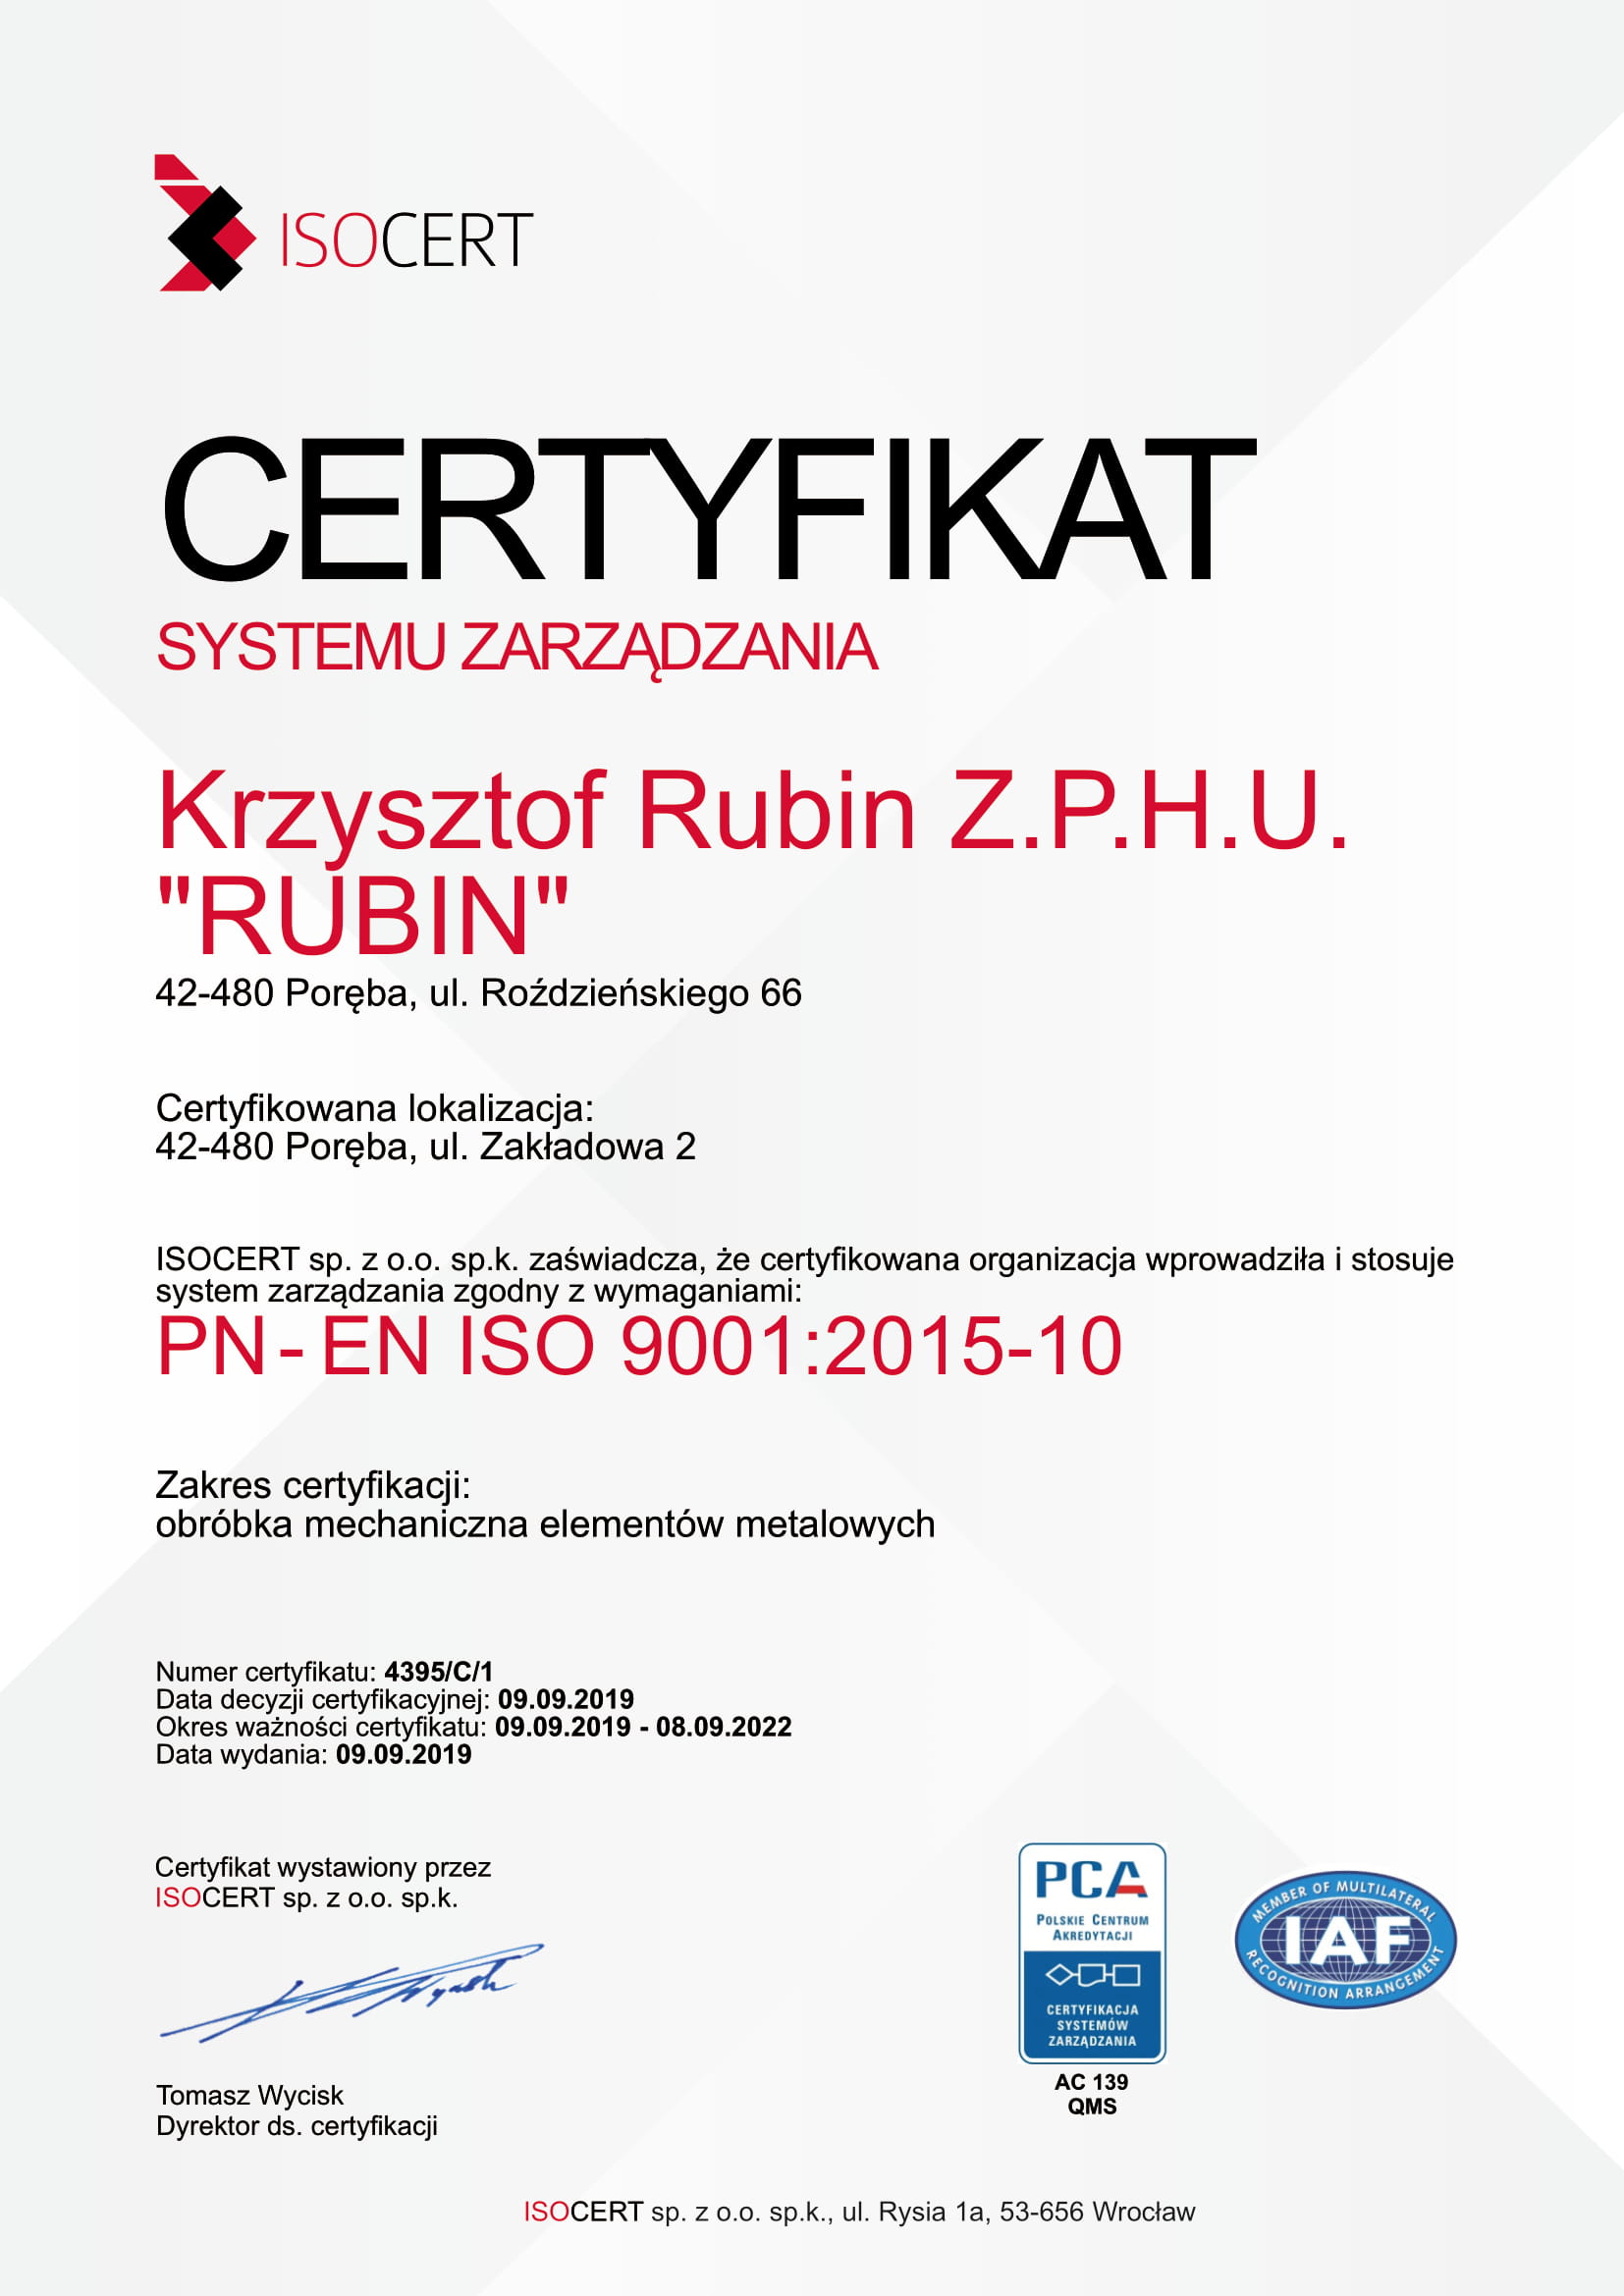 Certyfikat systemu zarządzania Krzysztof Rubin